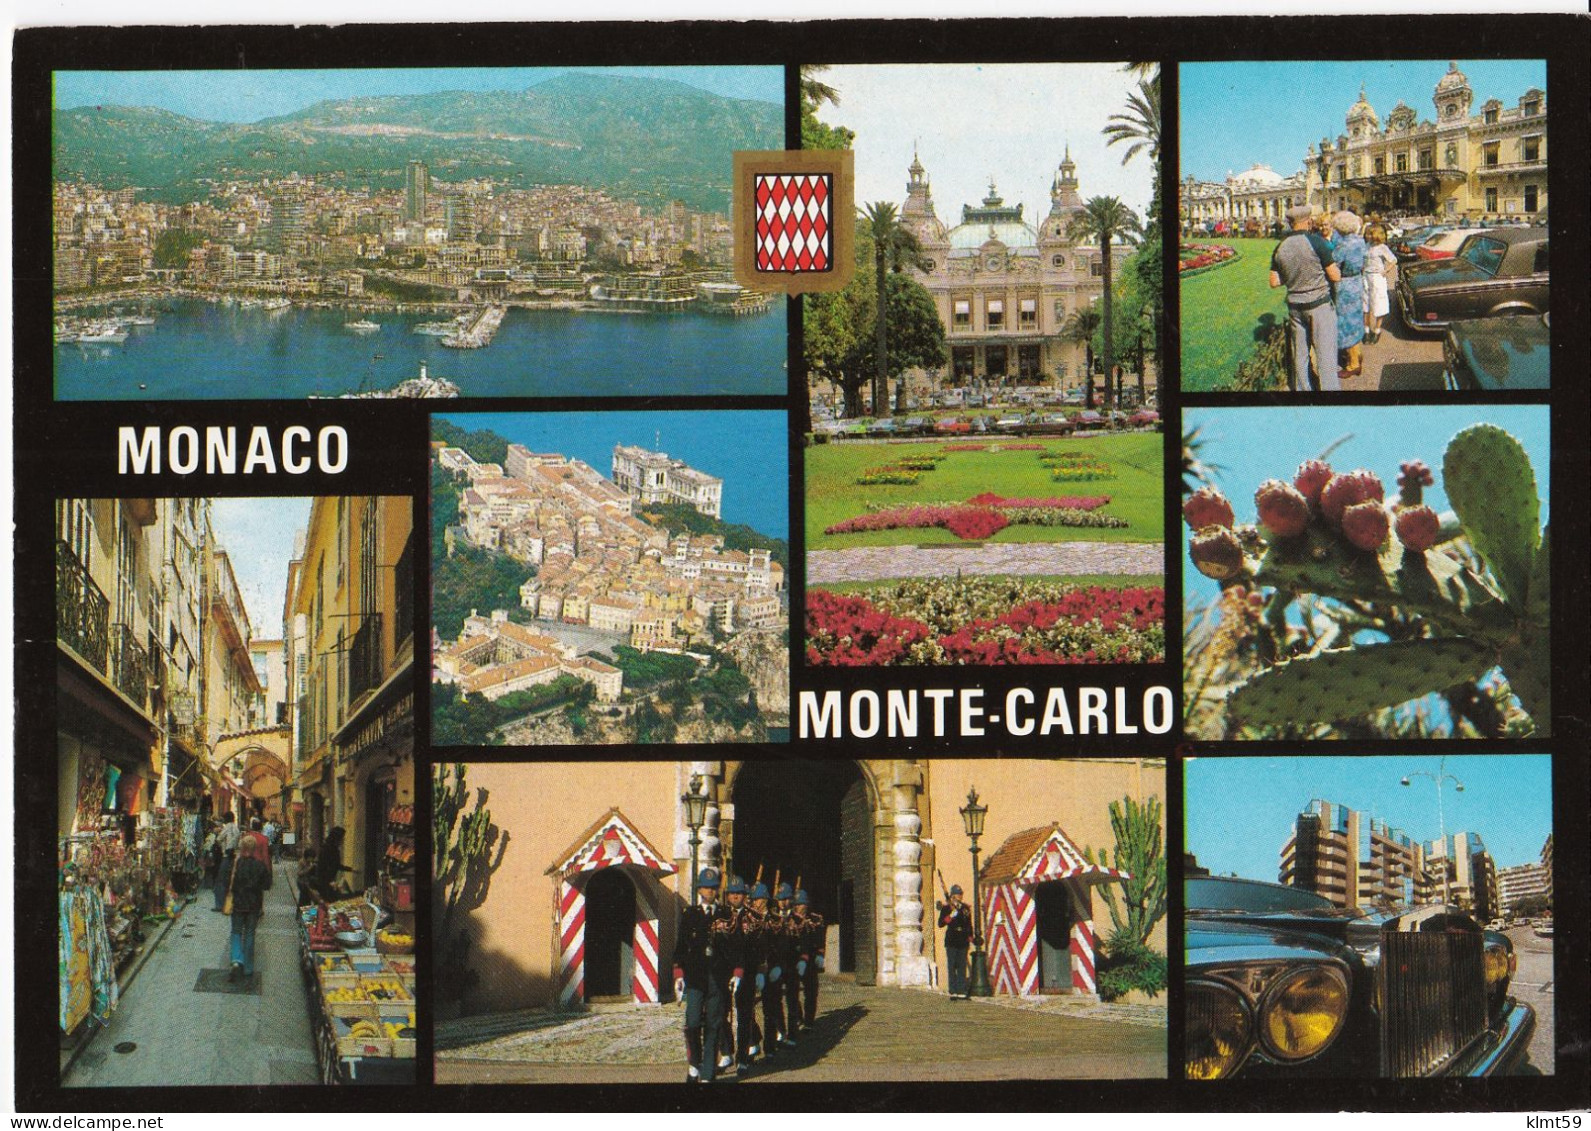 Monaco - Monte-Carlo - Panoramic Views